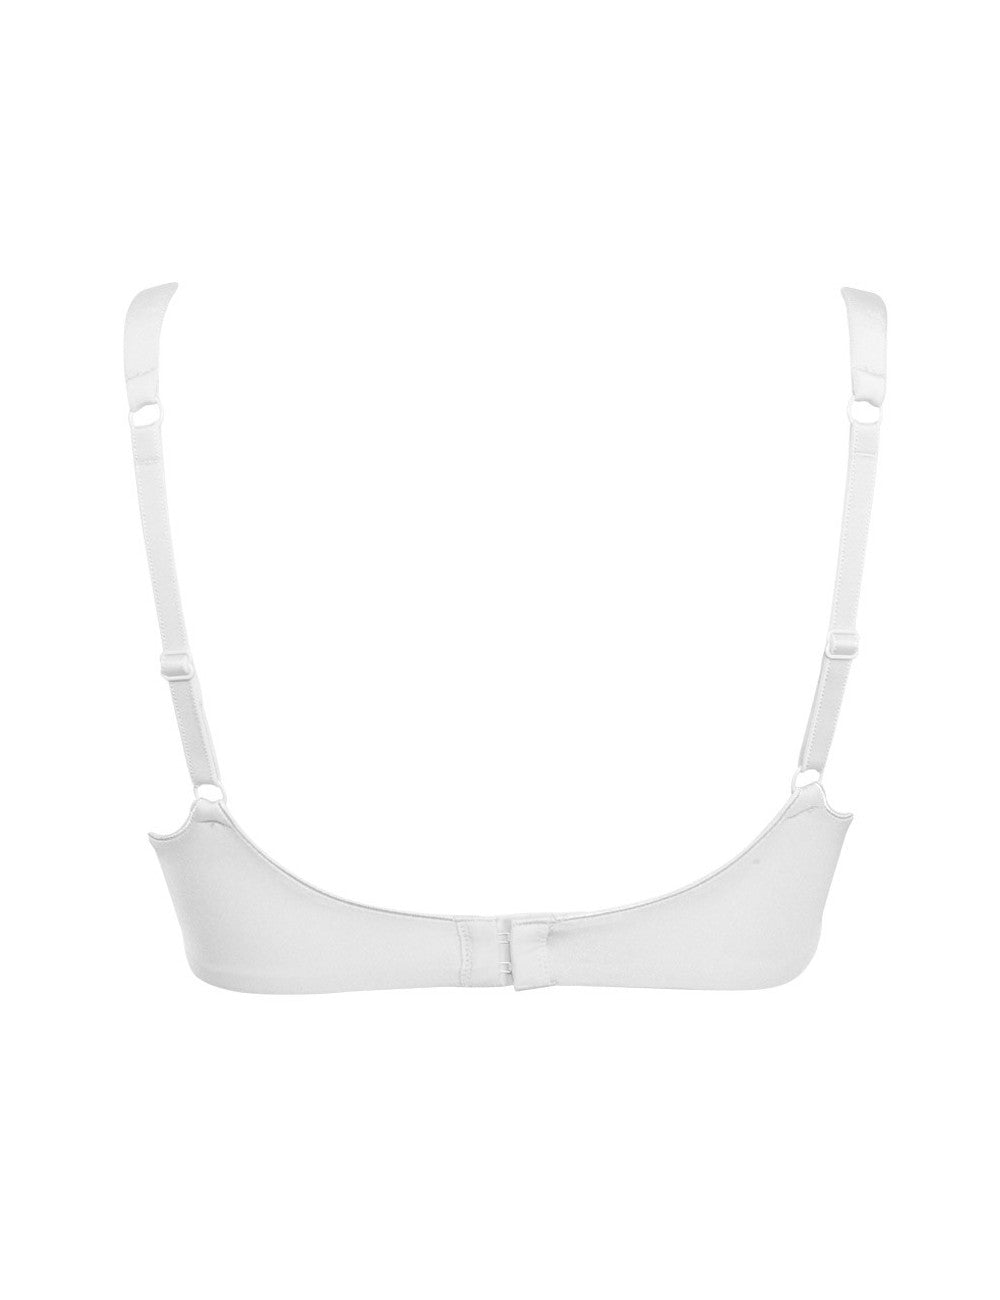 Wisremt V neck Modal Adjustable Strap Built In Bra Padded Self